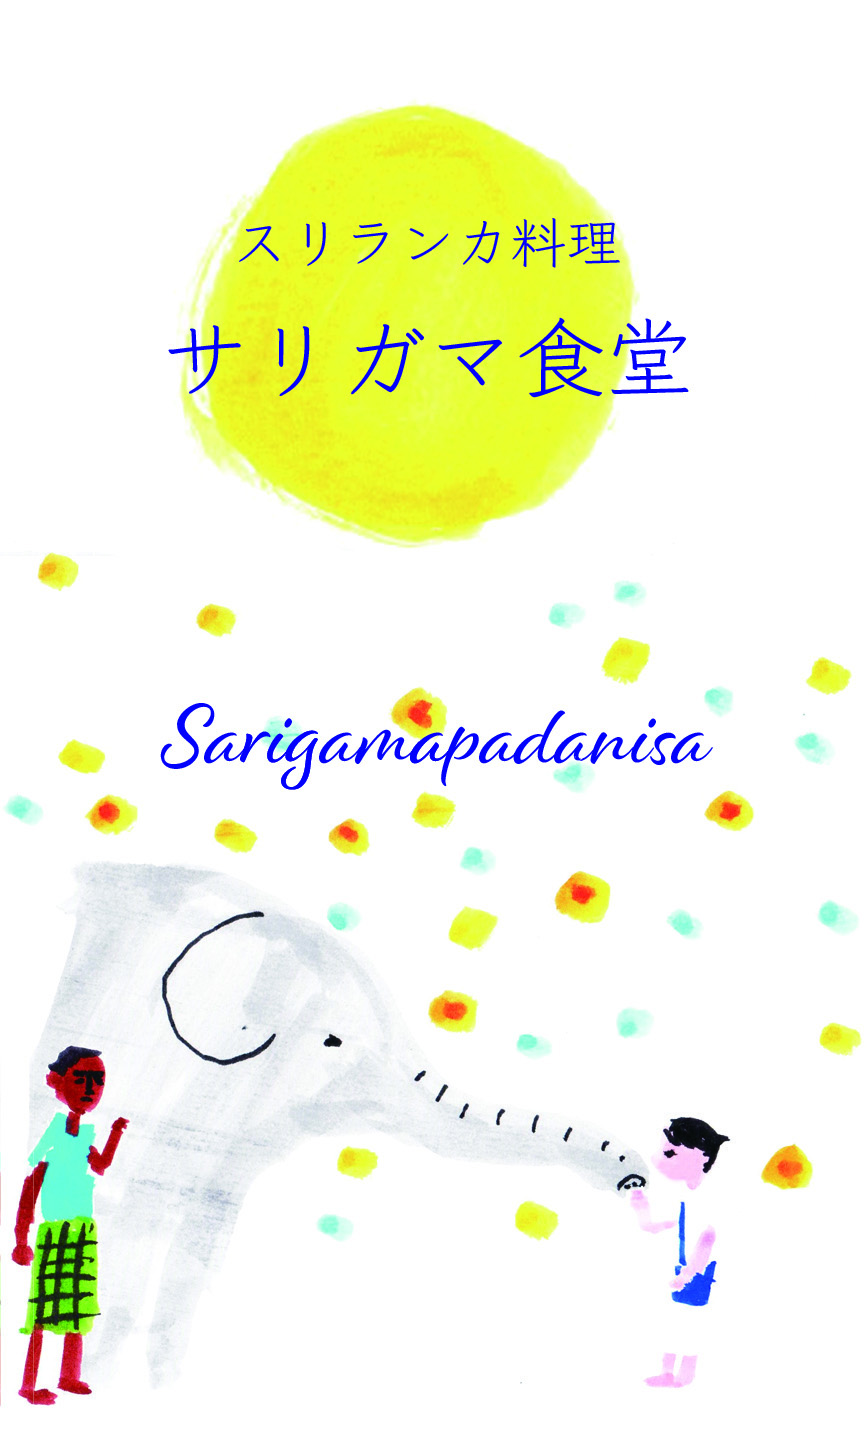 サリガマ食堂shopcard